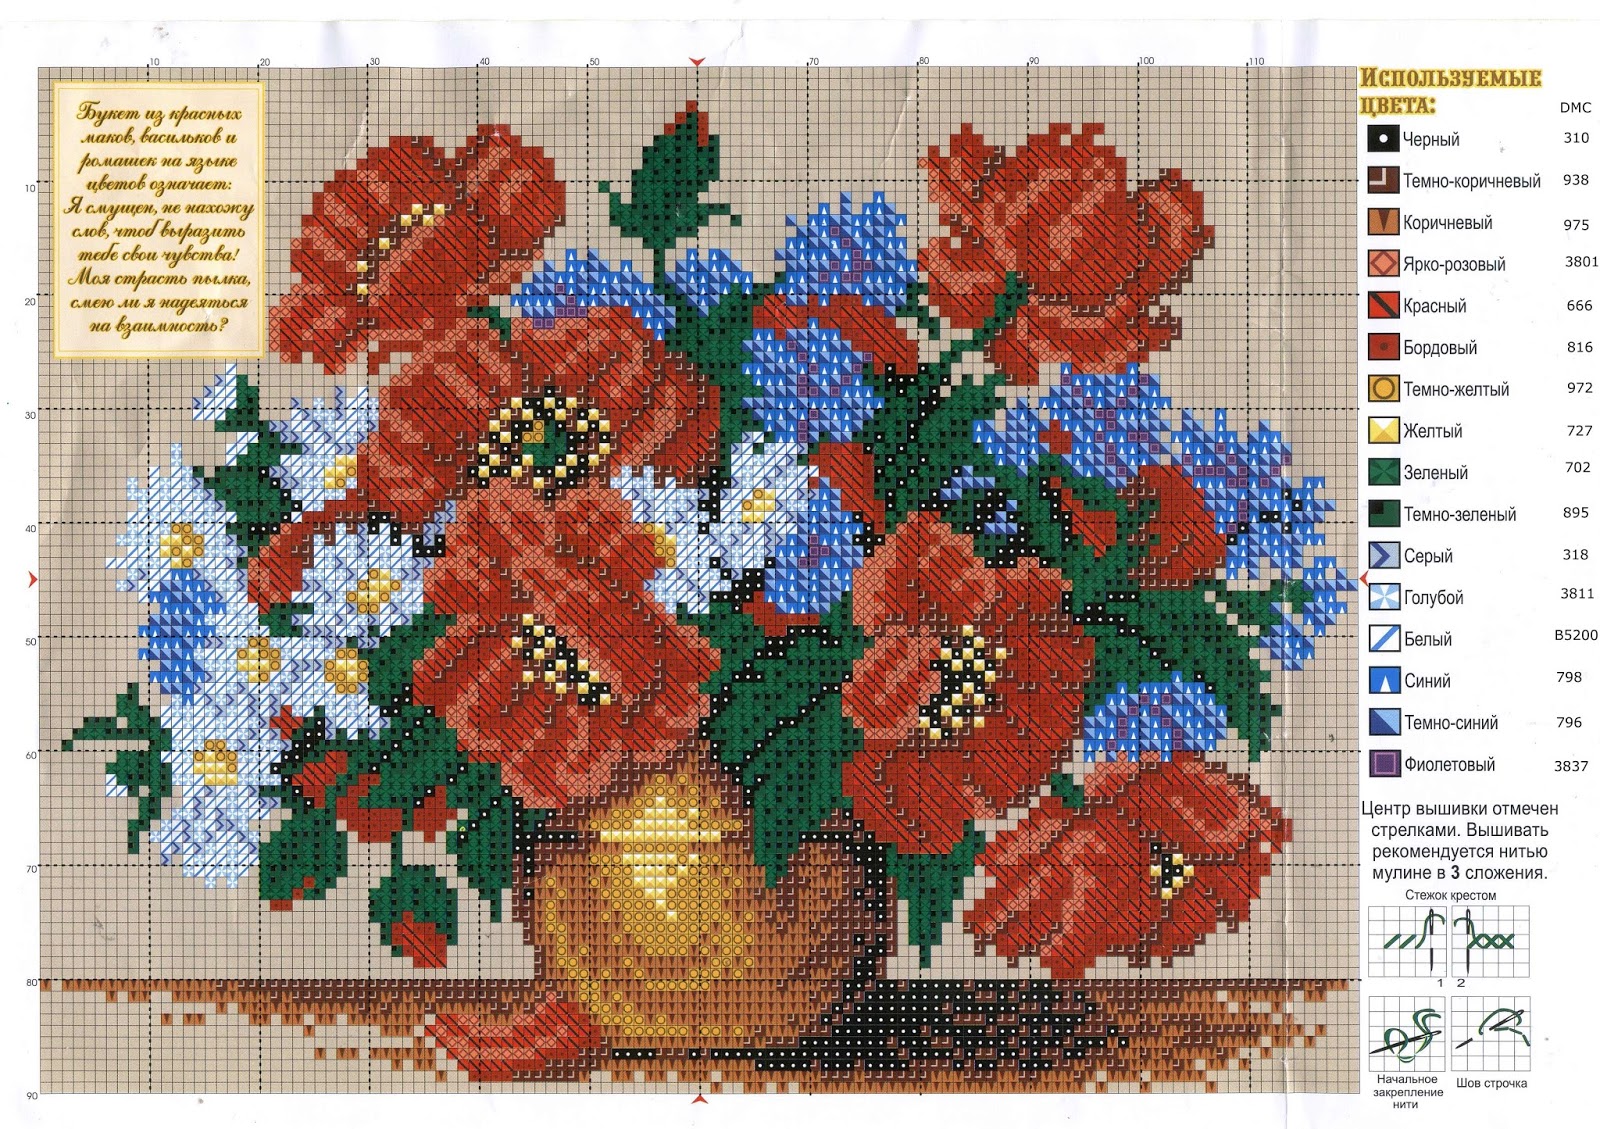 Цветы из бисера: схема пошаговая легкая цветка ромашки для начинающих, фото пиона, как сделать вышитые ирисы, подсолнухи, сирень